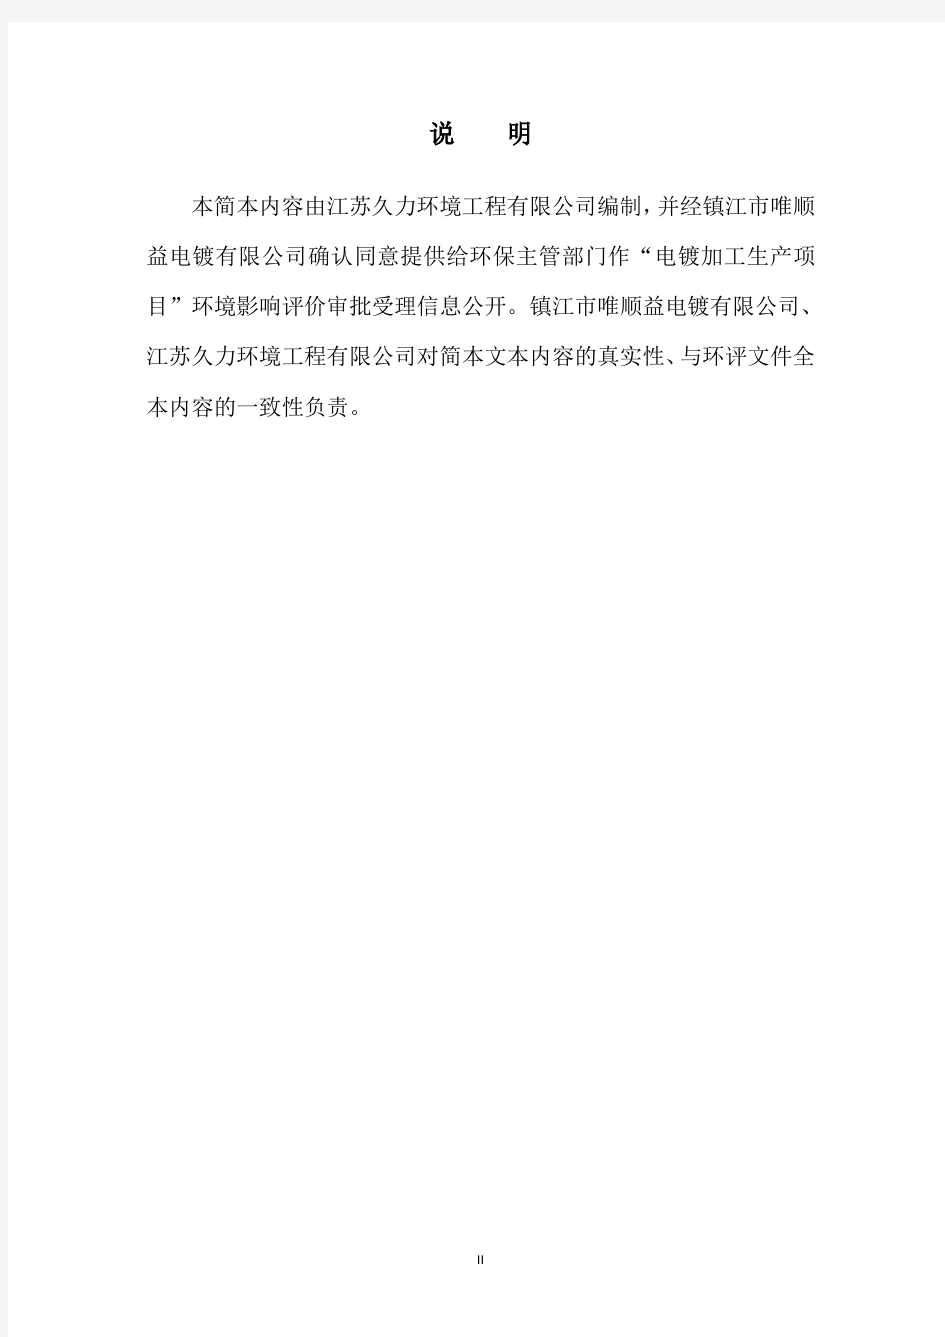 镇江市唯顺益电镀有限公司电镀加工项目环境影响评价报告书